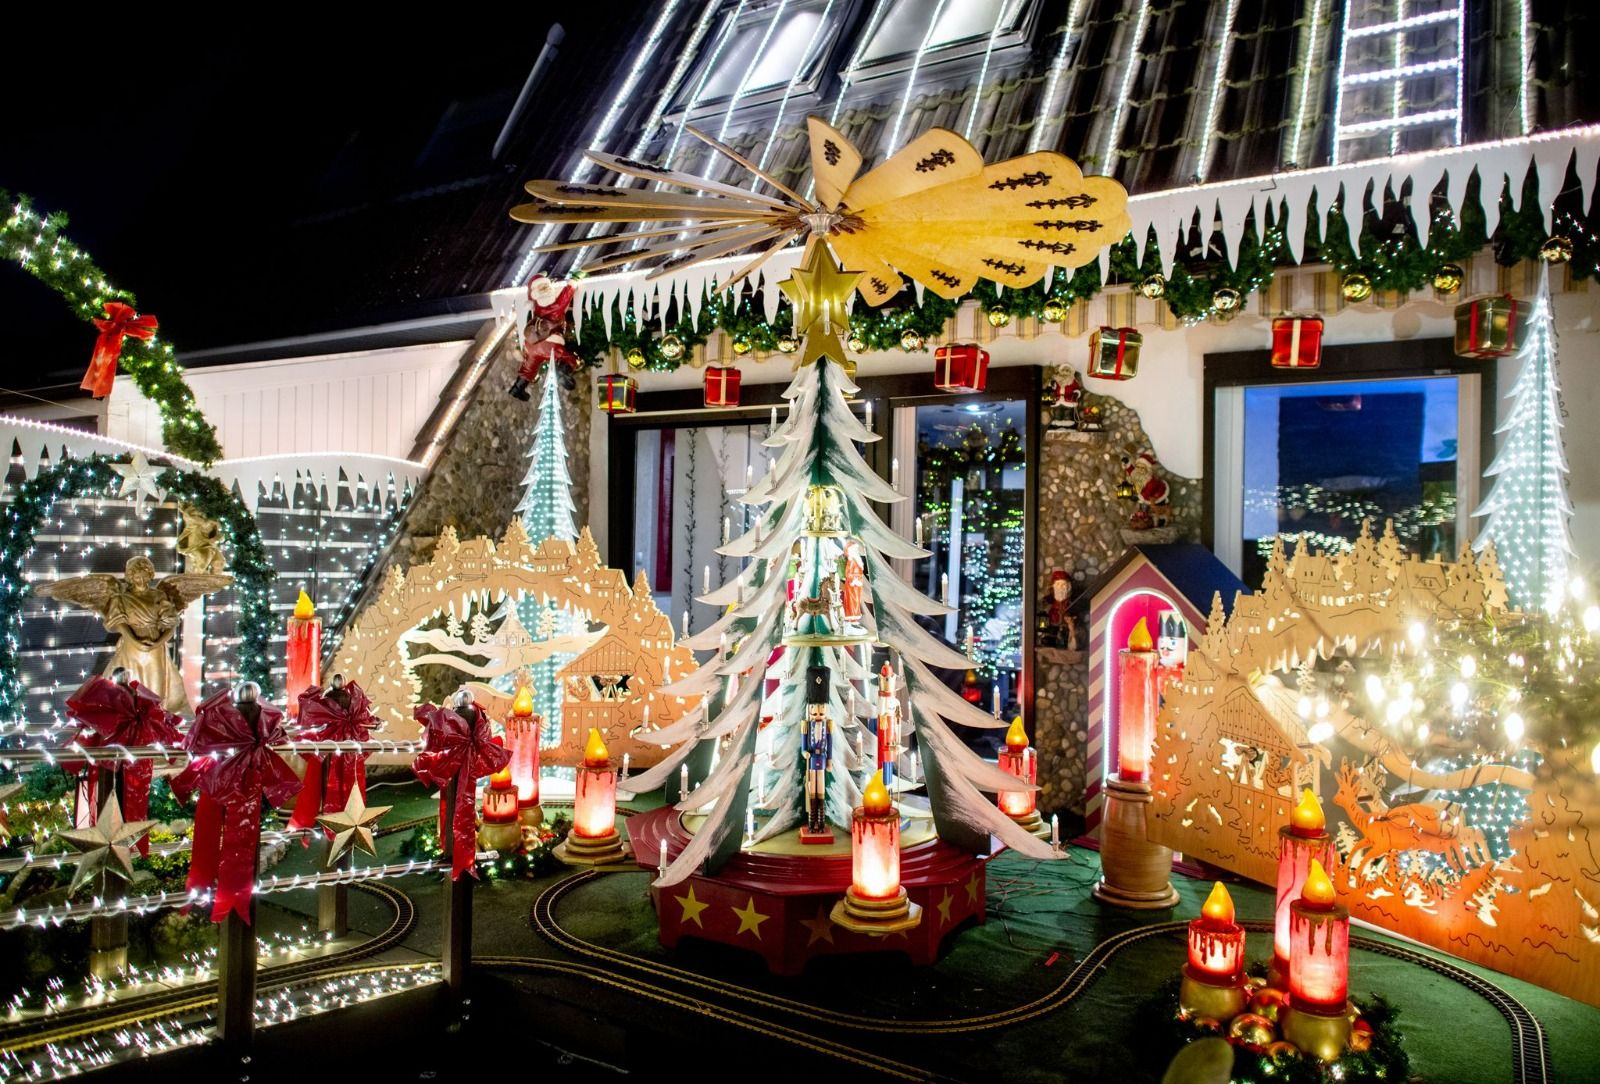 Numerosas luces iluminan la casa de la familia Borchart, decorada con motivos navideños. Desde el inicio del Adviento hasta el final del año, la casa de la familia brilla con adornos navideños y unas 60.000 luces.